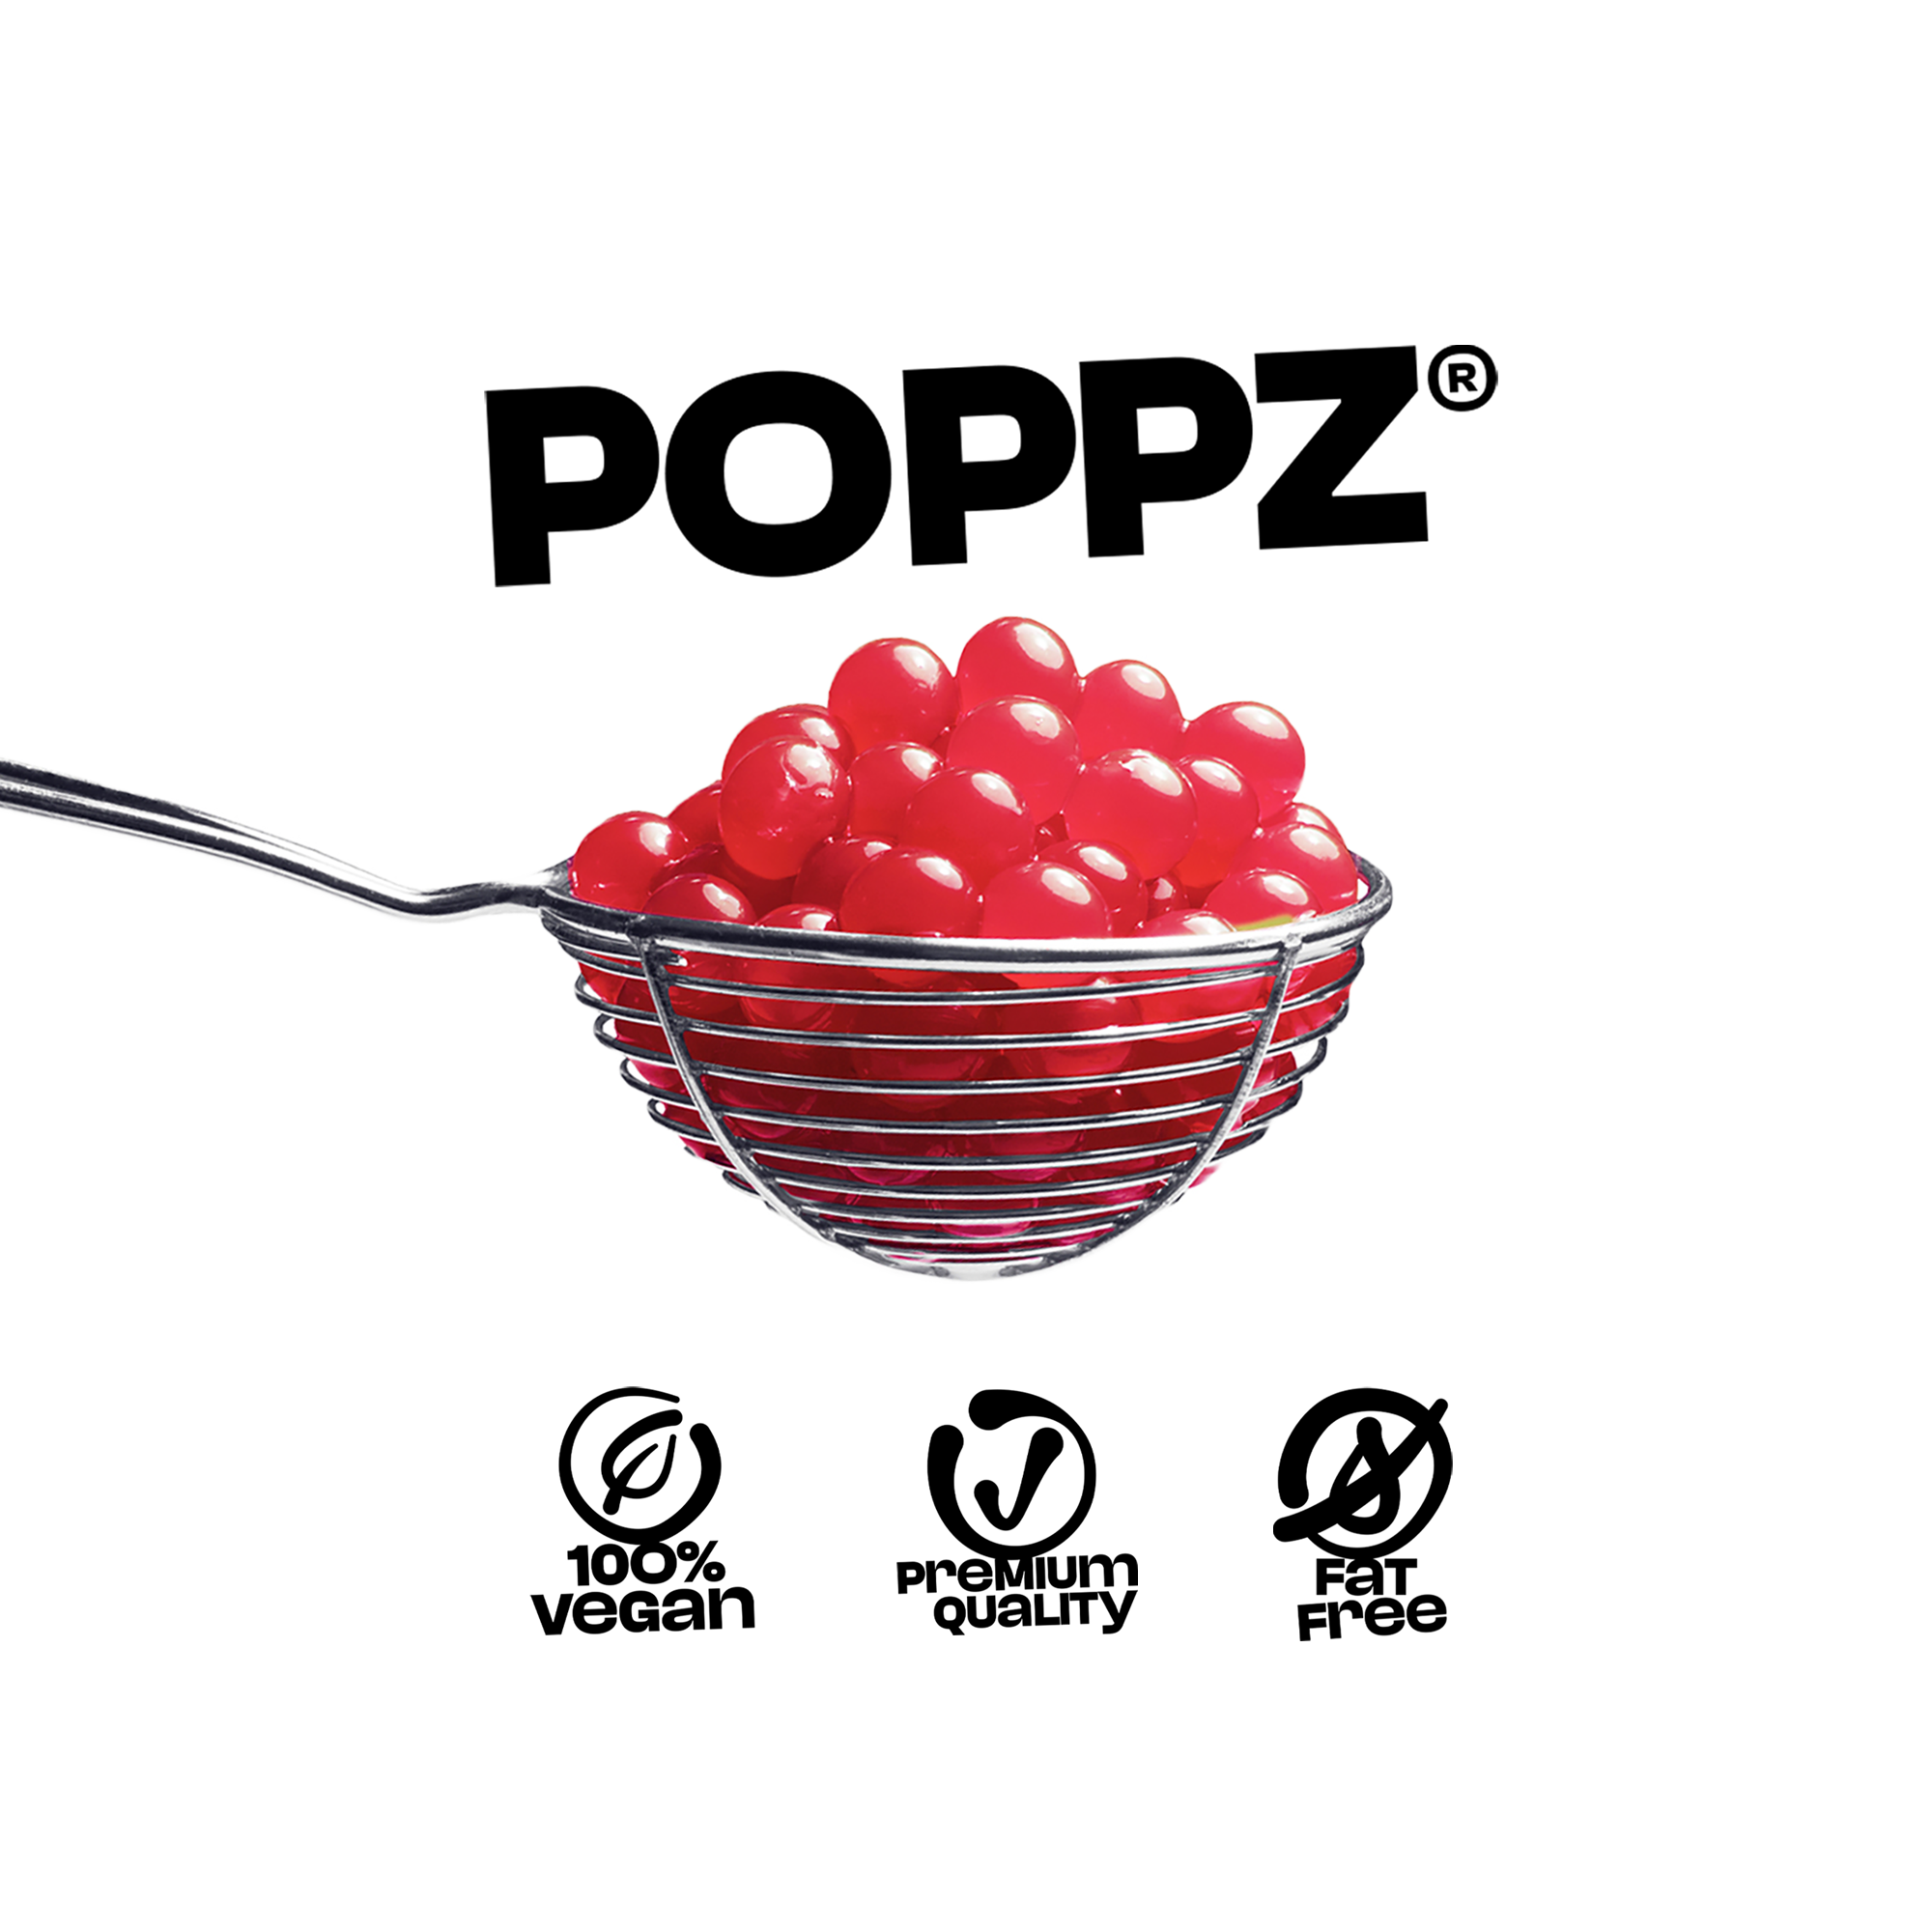 POPPZ Cherry Kit with Tapioca scoop and 10 straws